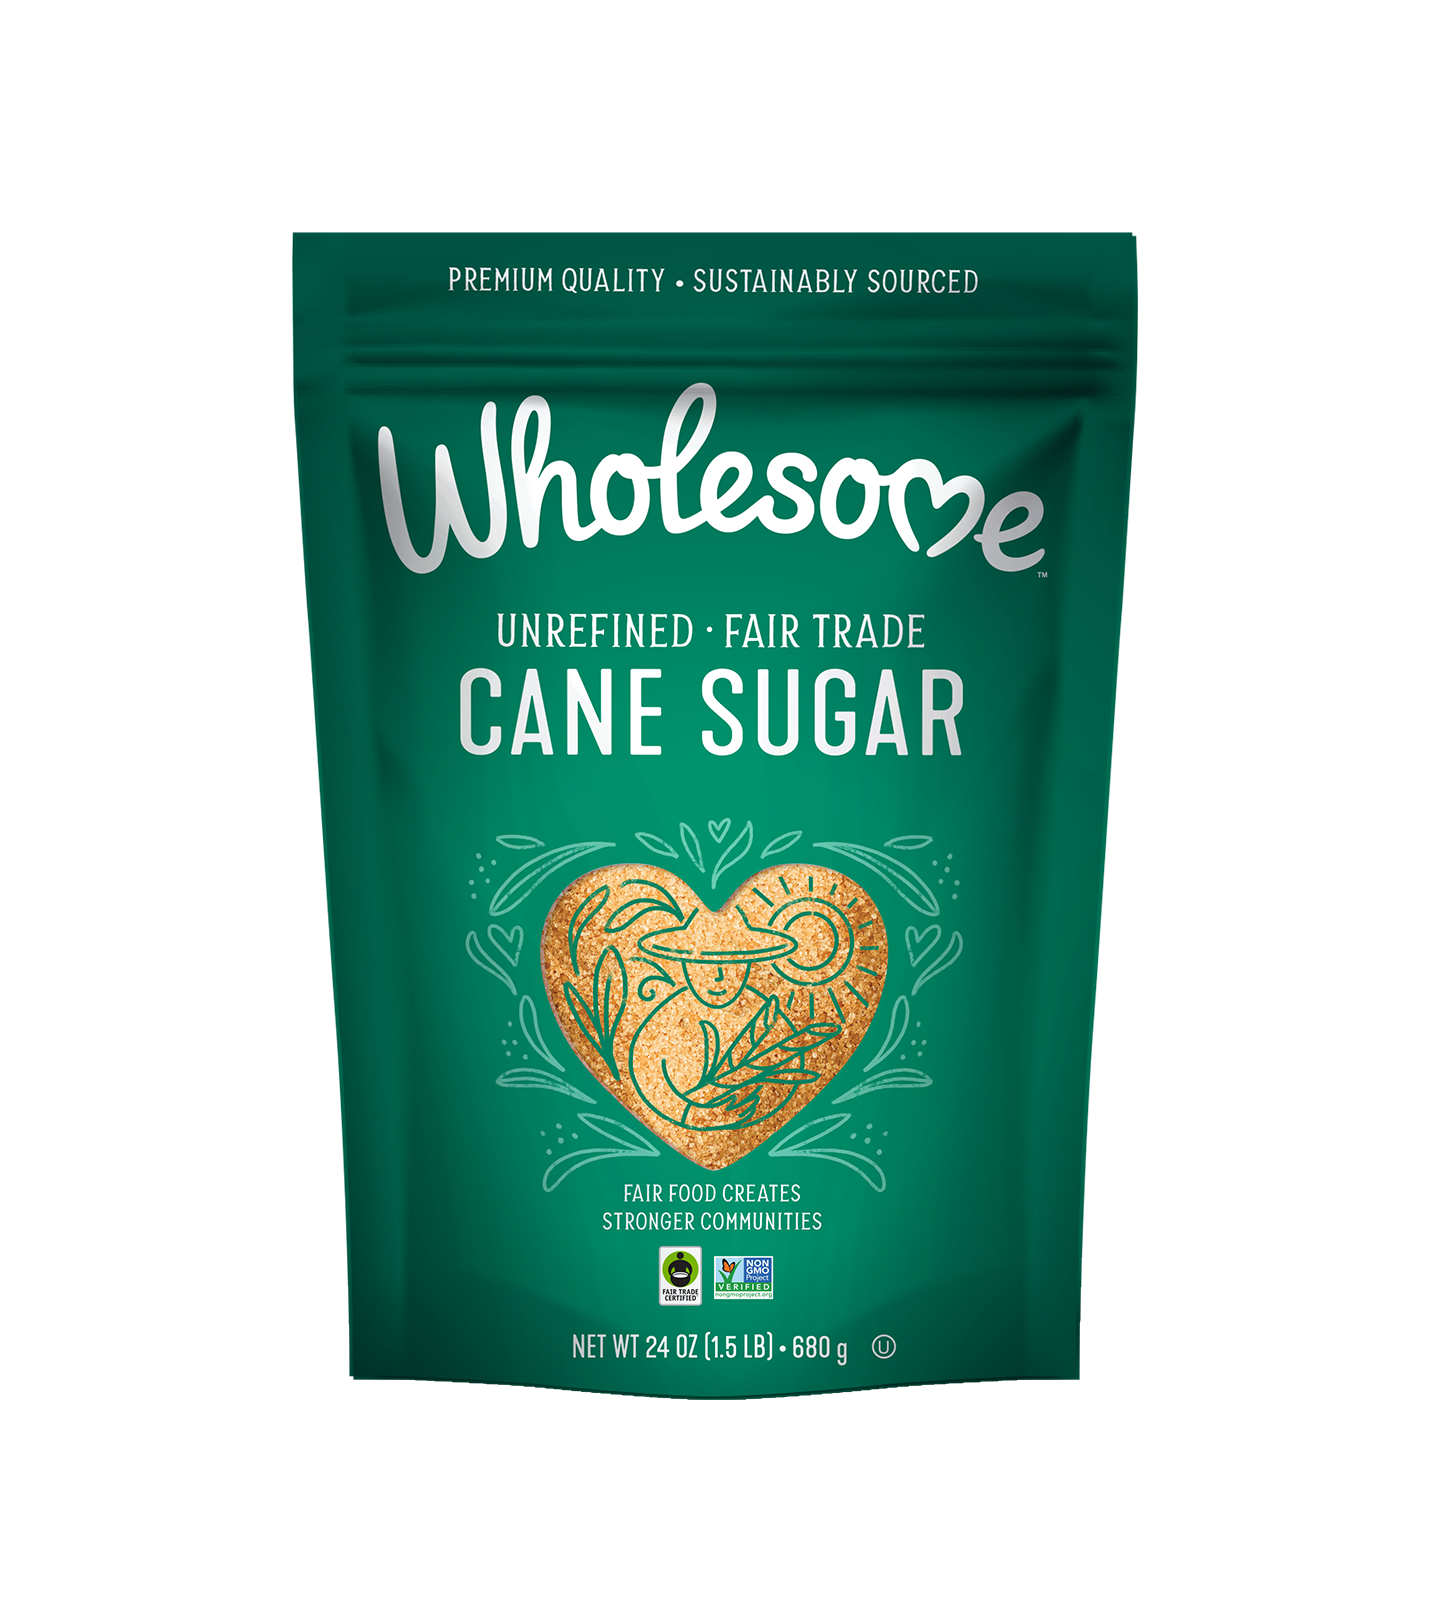 Cane Sugar - - Carousel Image